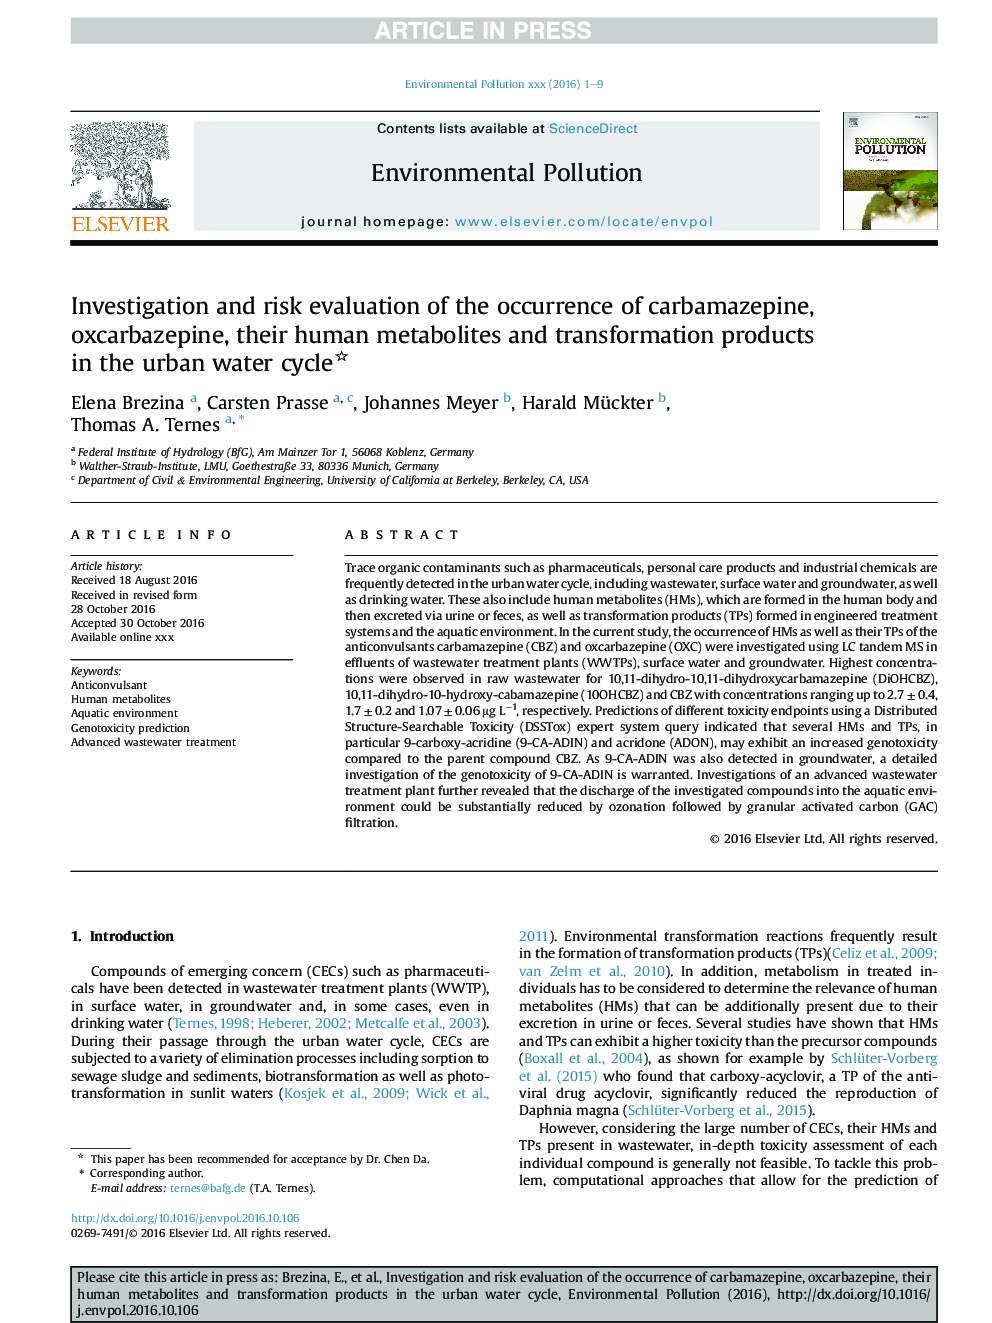 بررسی و ارزیابی خطر وقوع کاربامازپین، اکسکروبازپین، متابولیتهای انسانی و محصولات تحرک در چرخه آب شهری 